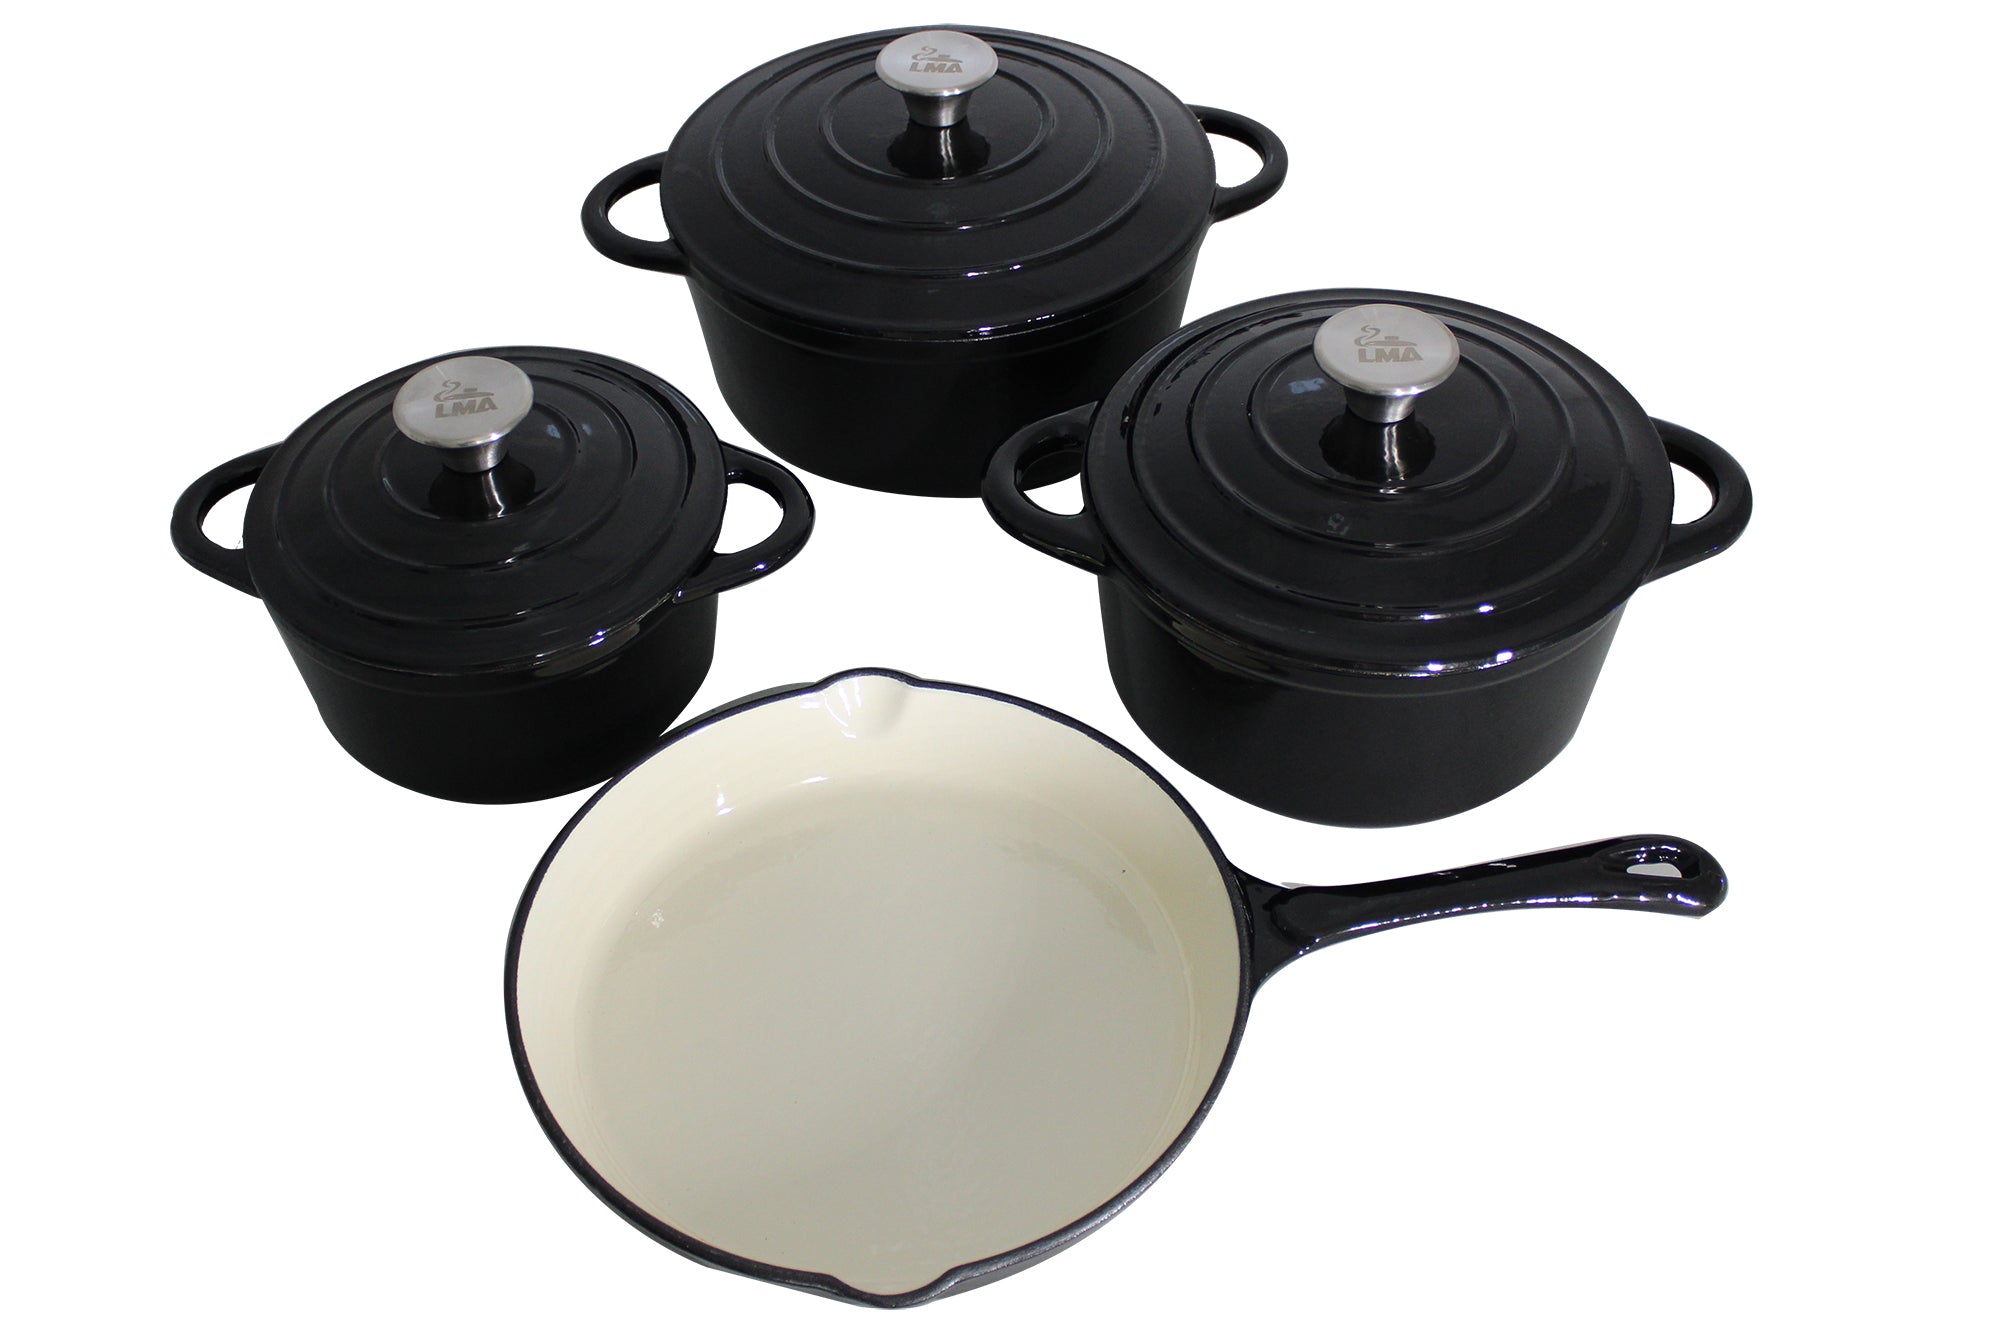 LMA Authentic 7 Piece Cast Iron Dutch Oven Cookware Set - Black